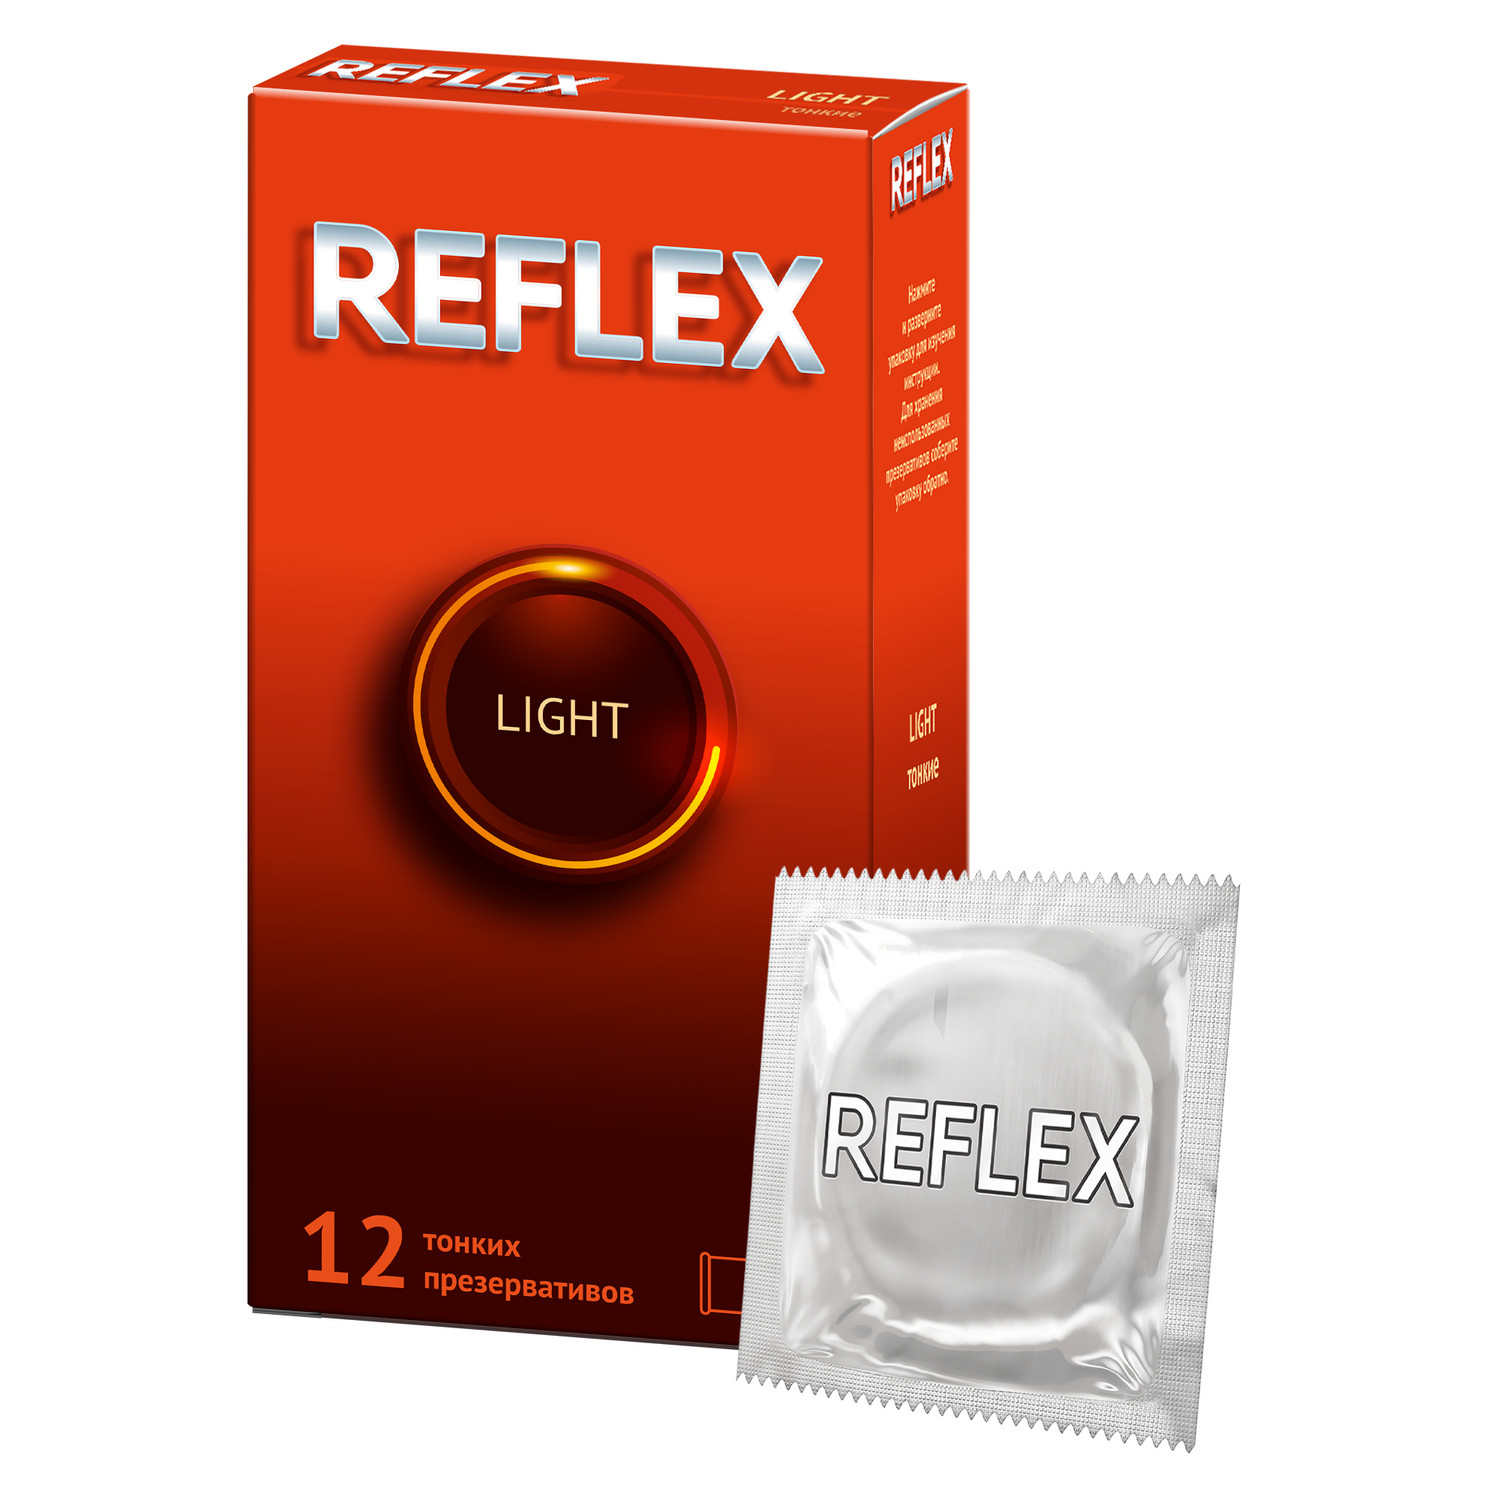 Reflex Light презервативы в смазке, 12 шт. sico презервативы тонкие контурные 12